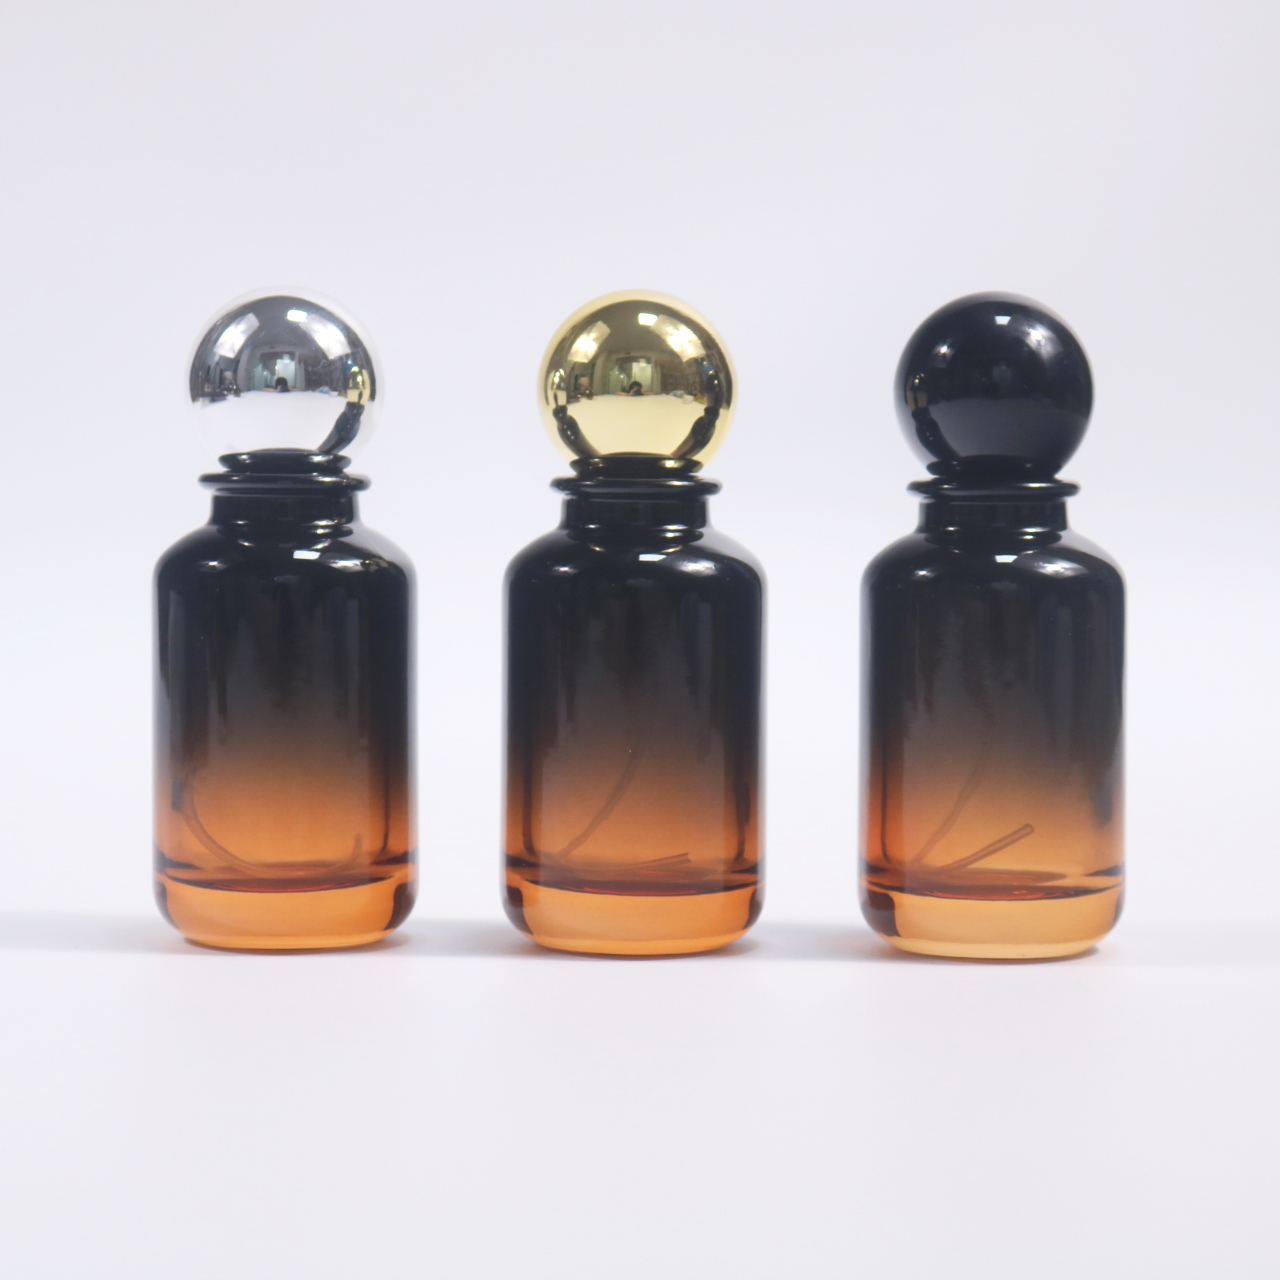 लक्झरी परफ्यूम बाटल्या: भव्यता आणि उत्कृष्ट सुगंधांचा कालातीत संलयन